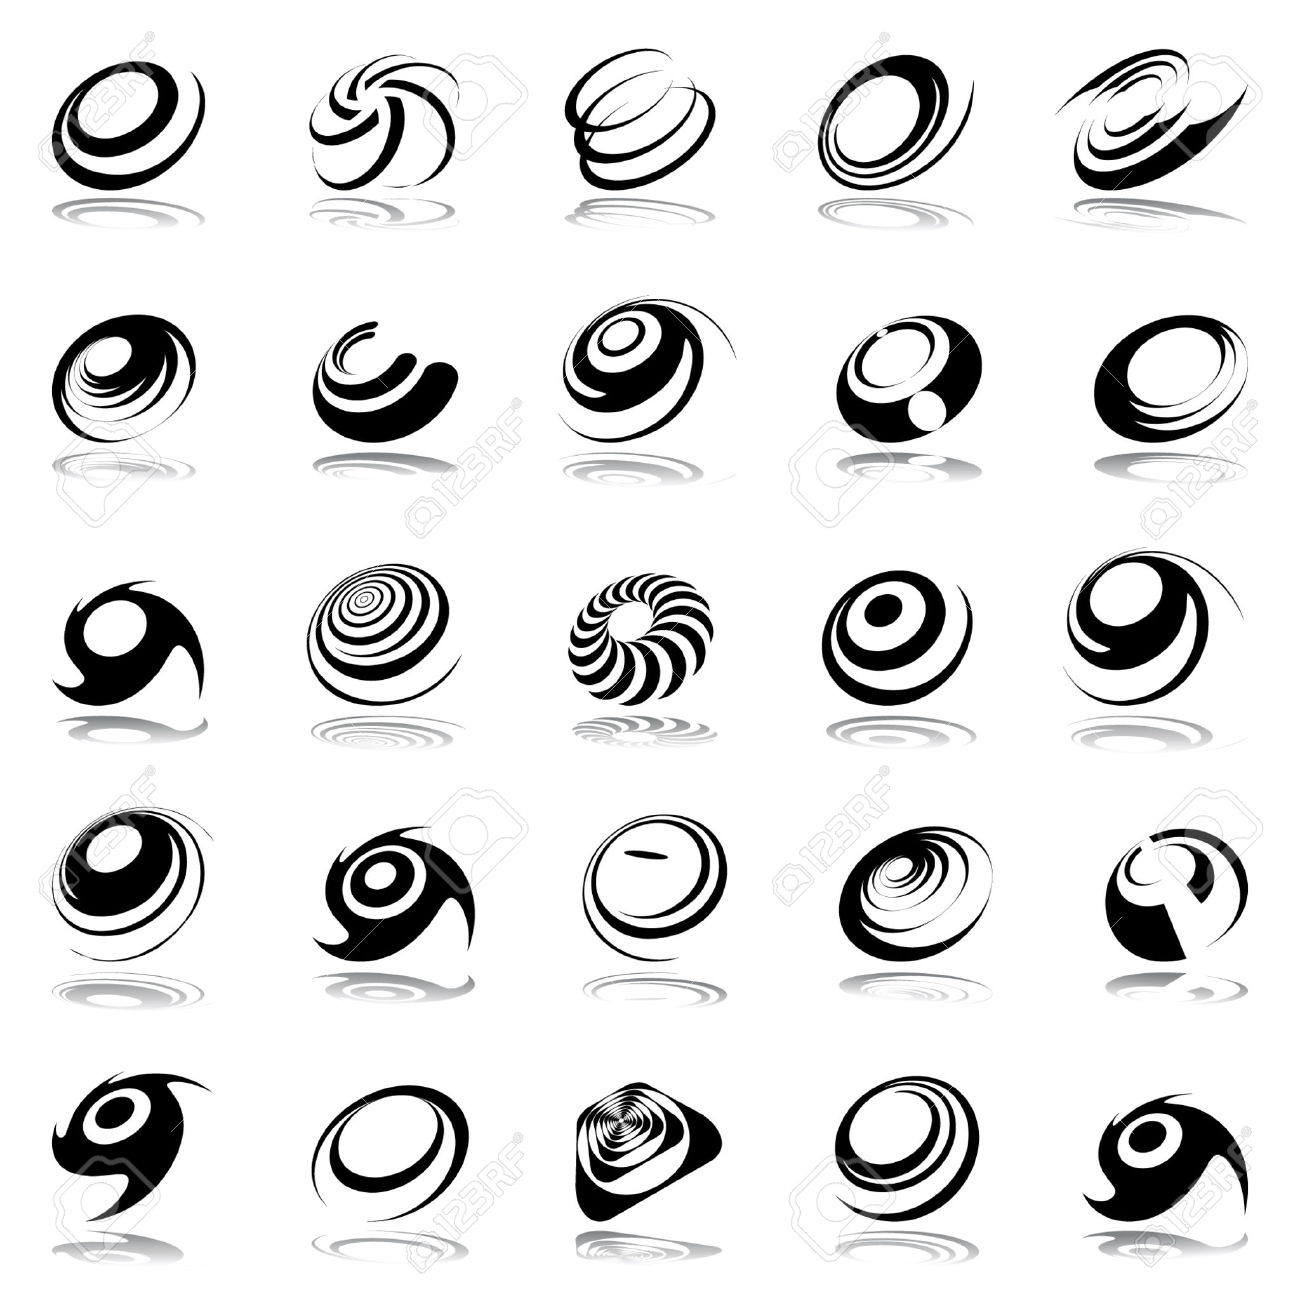 30+ Spiral Tattoo Designs